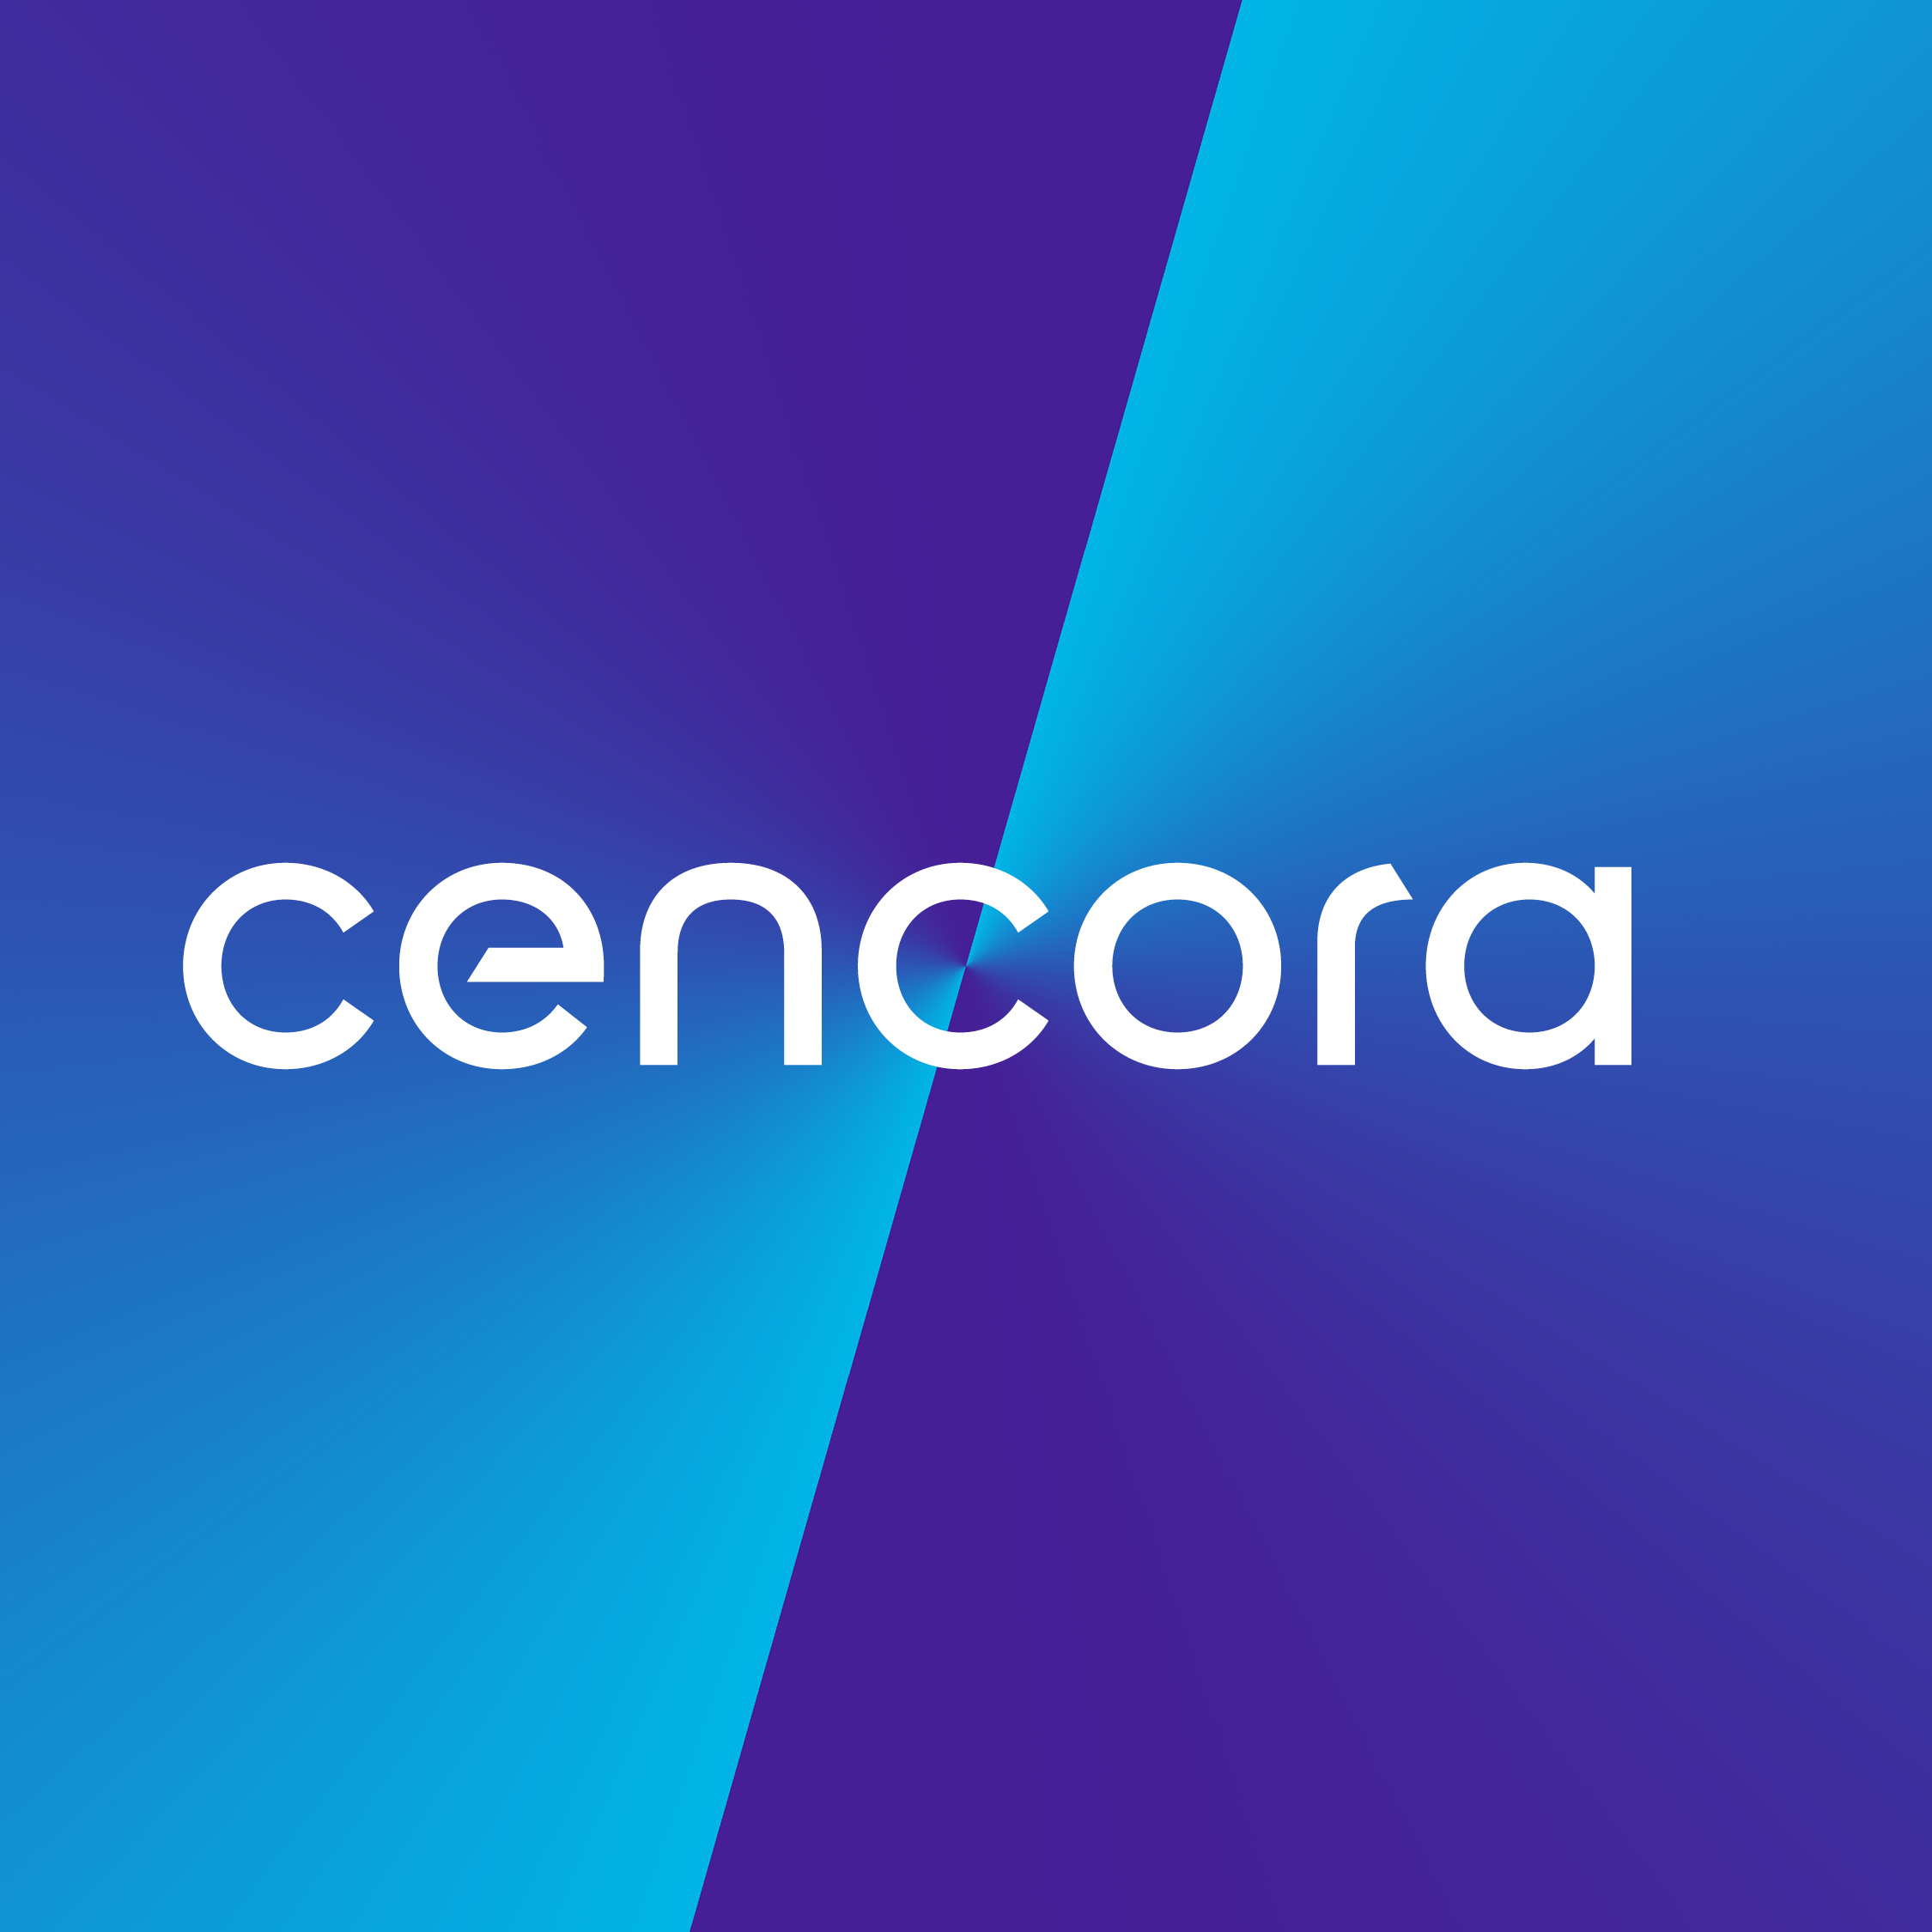 AmerisourceBergen annonce son intention de changer de nom pour devenir Cencora